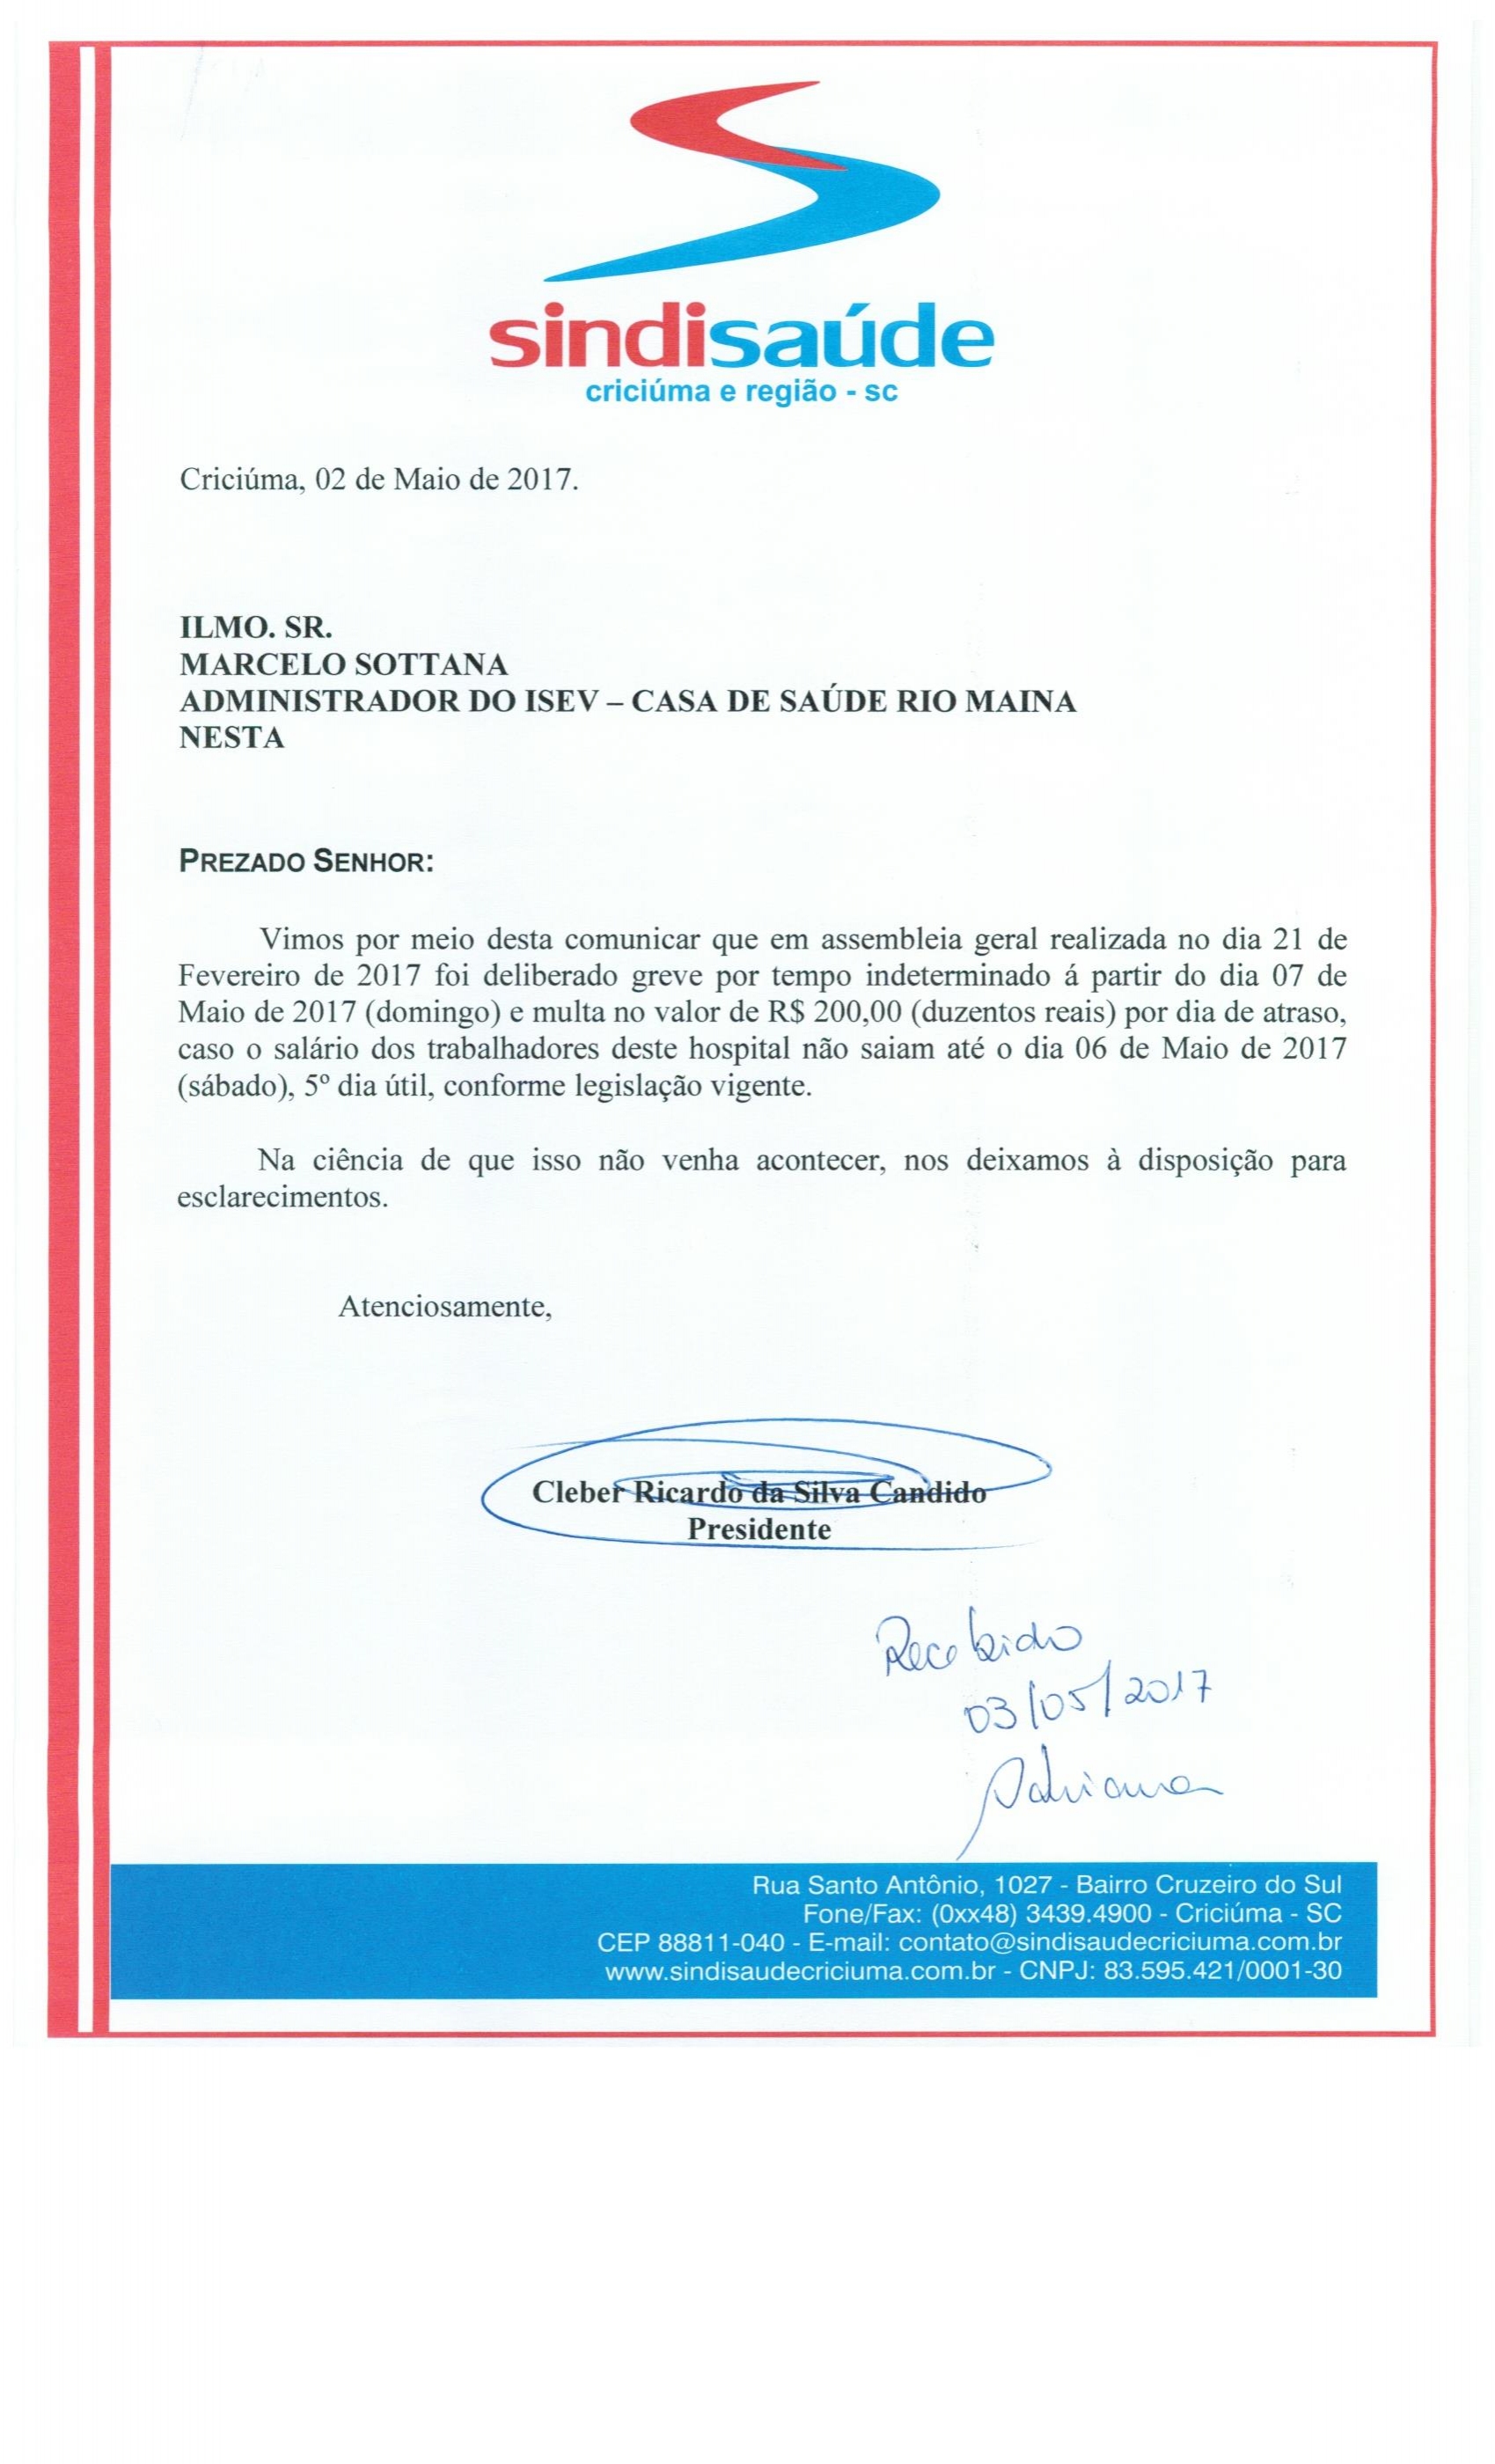 OFÍCIO COMUNICAÇÃO DE GREVE POR ATRASO DE SALÁRIOS ISEV - C.S.R.M.